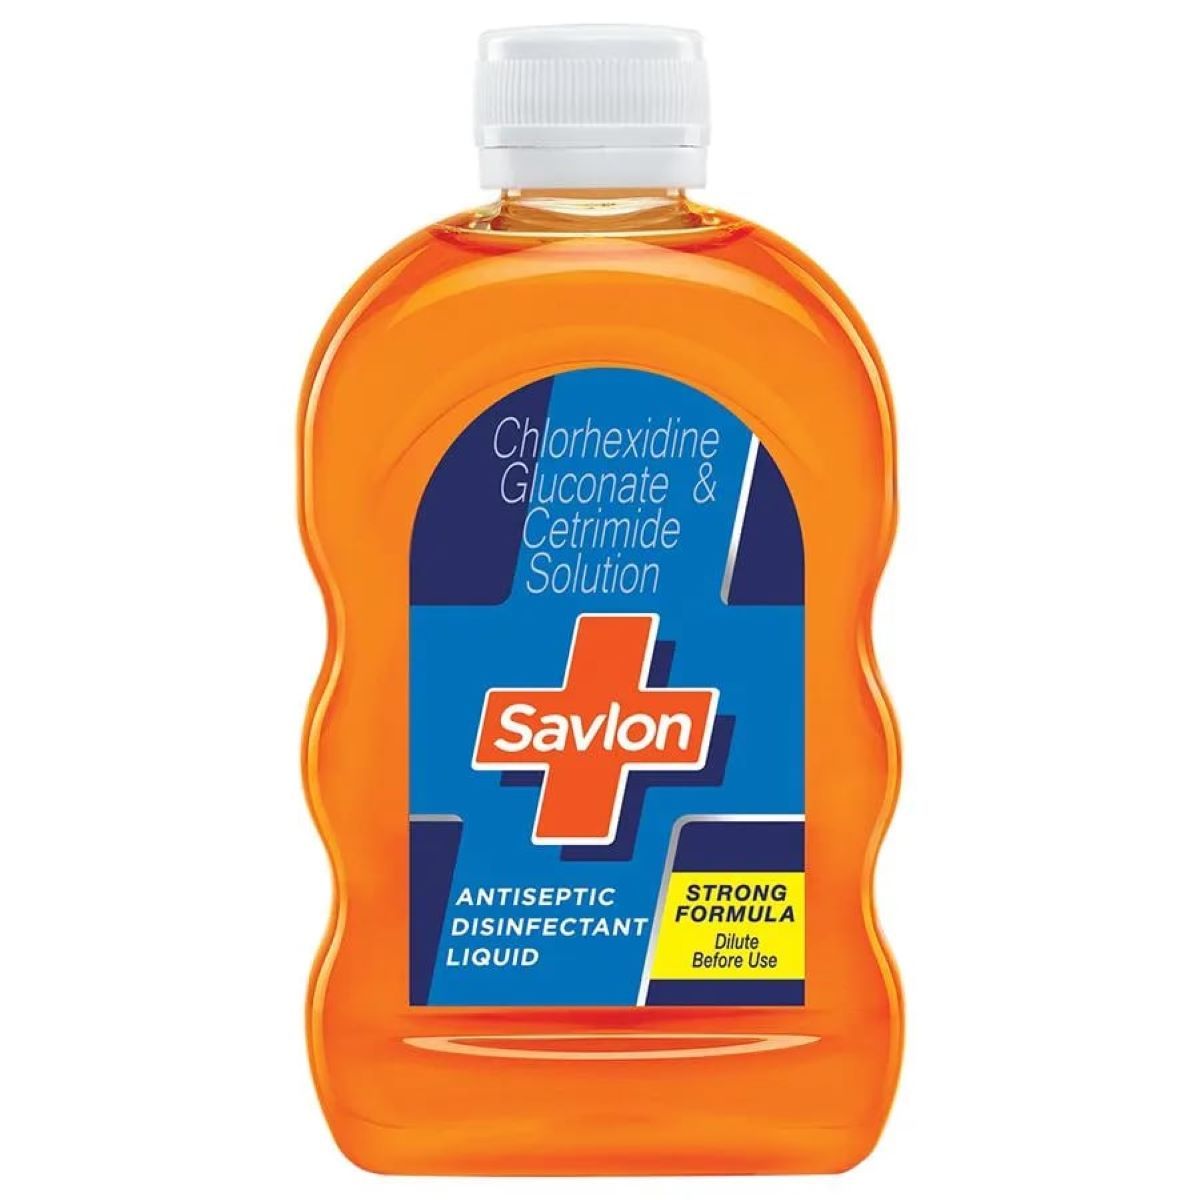 Savlon Antiseptic Disinfectant Liquid, 100 ml, Pack of 1 